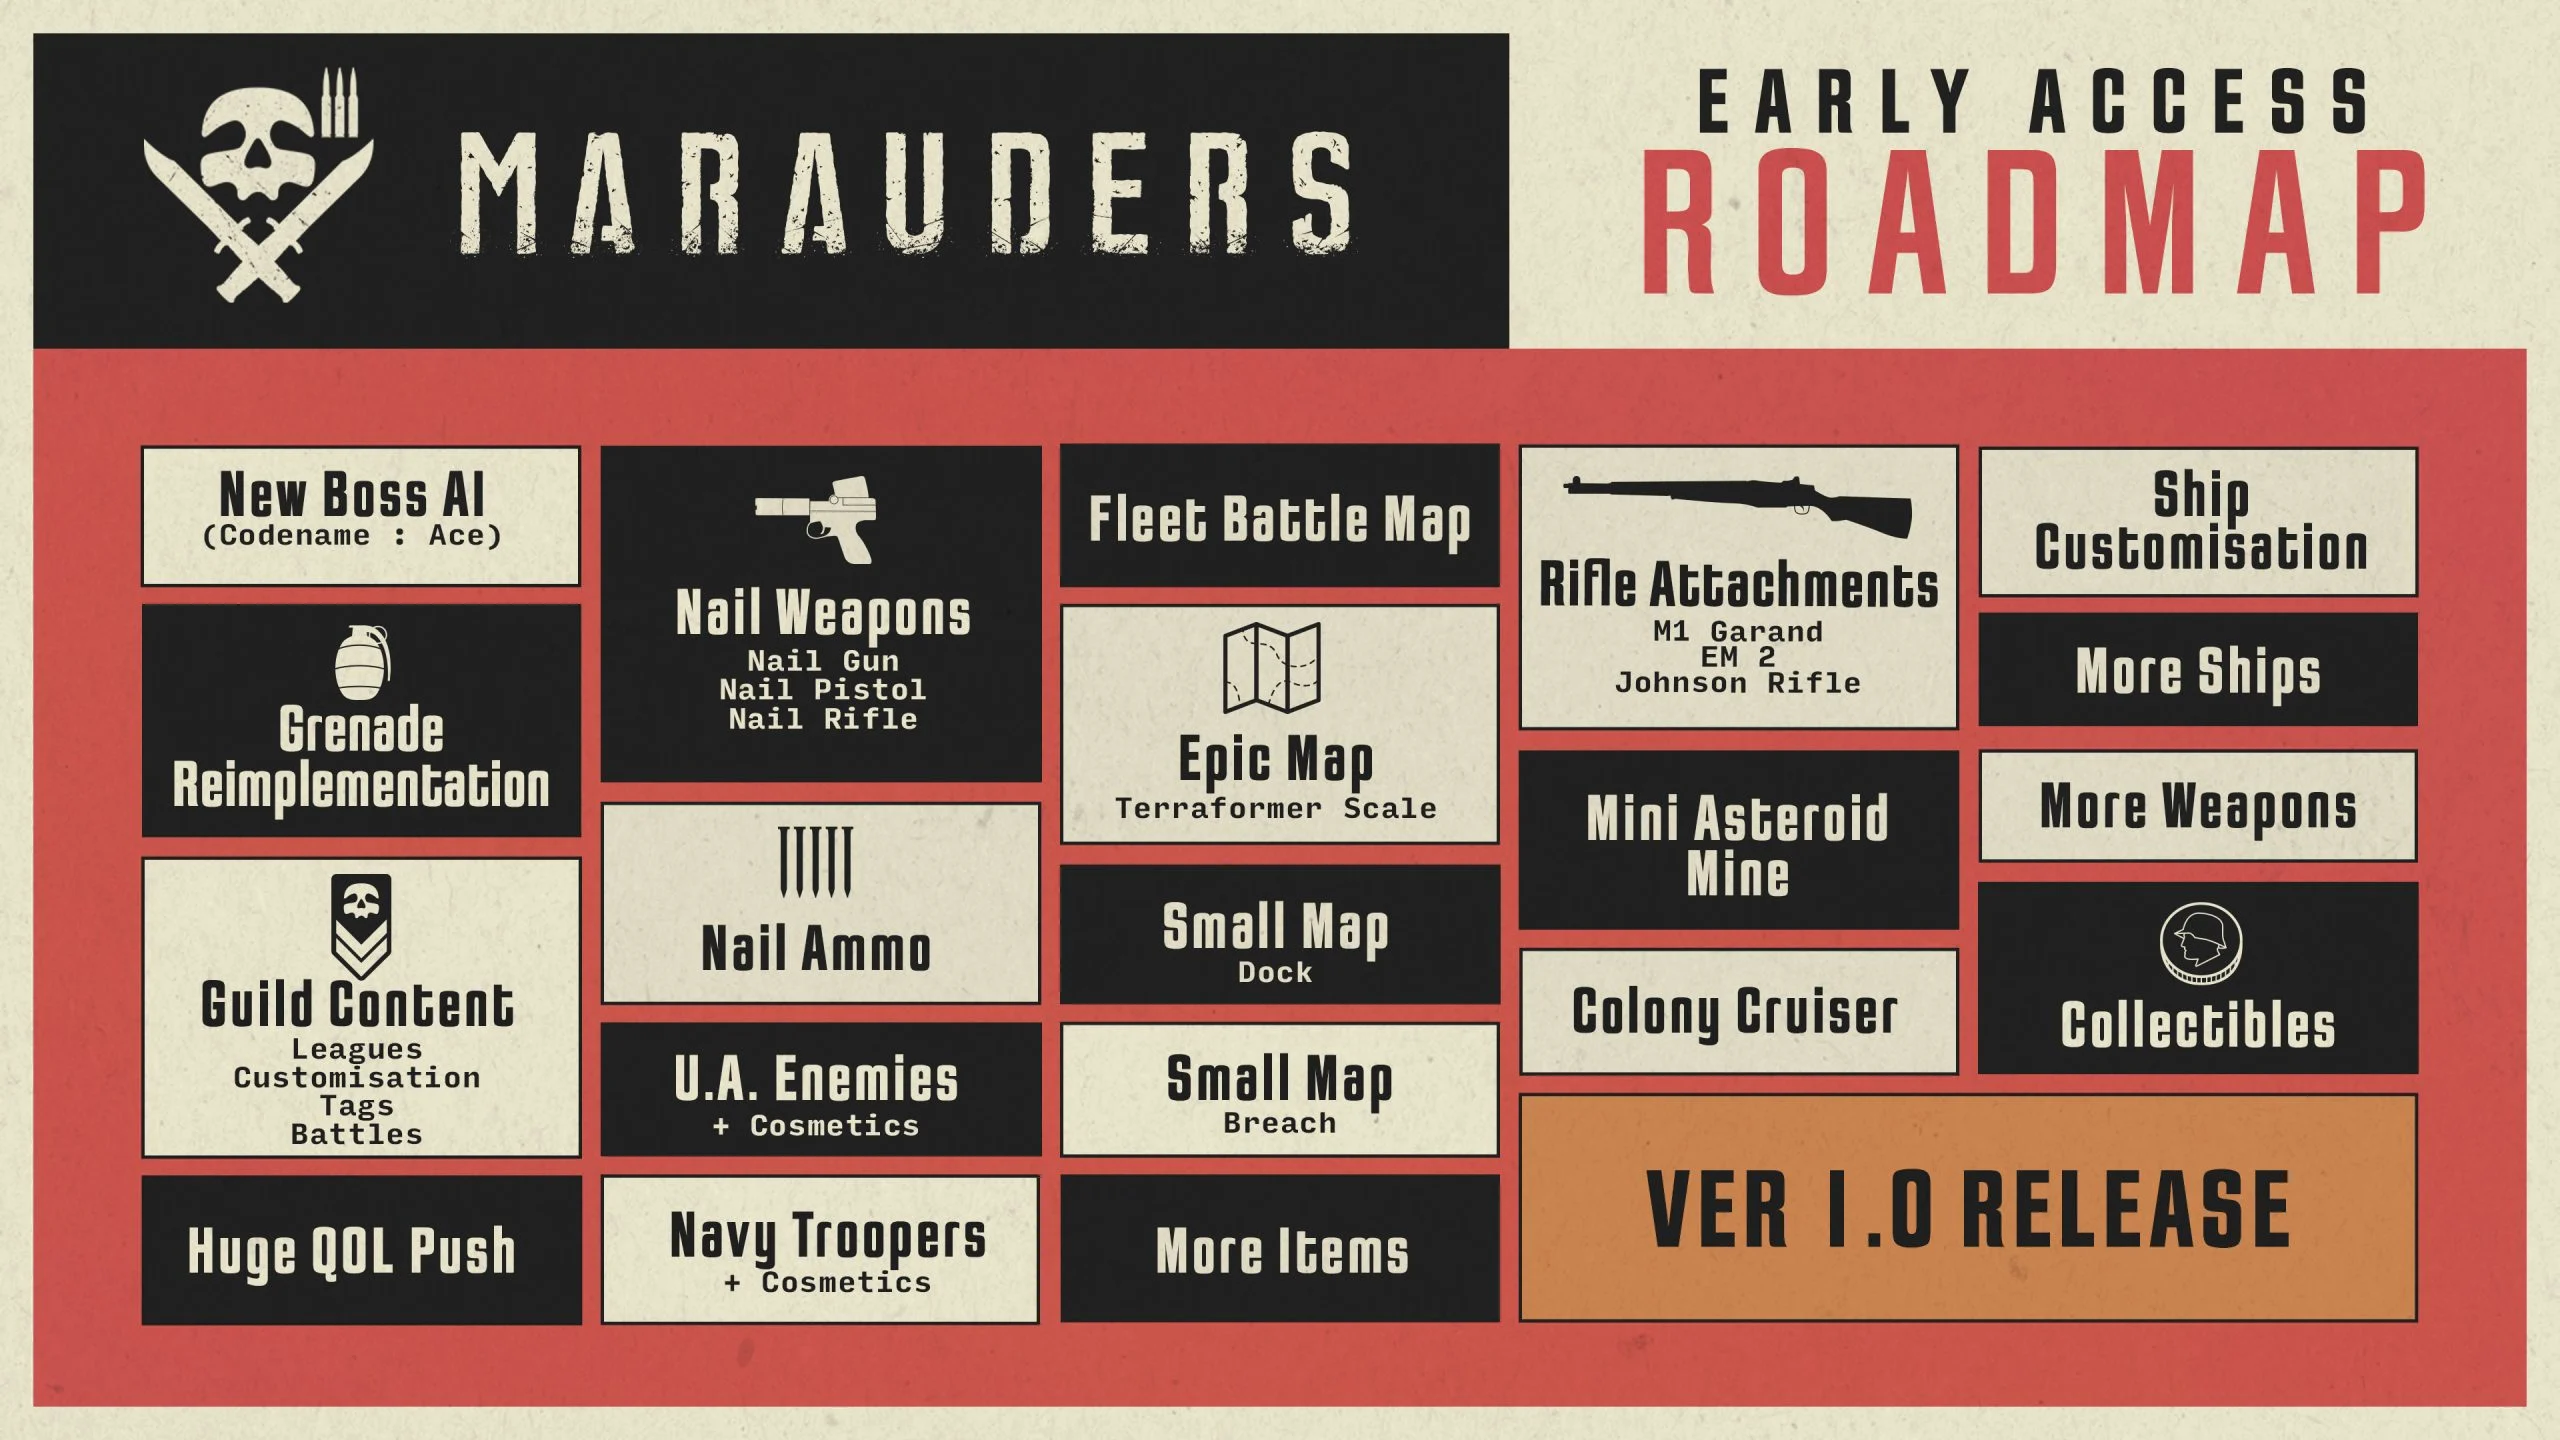 Marauders Early Access Roadmap